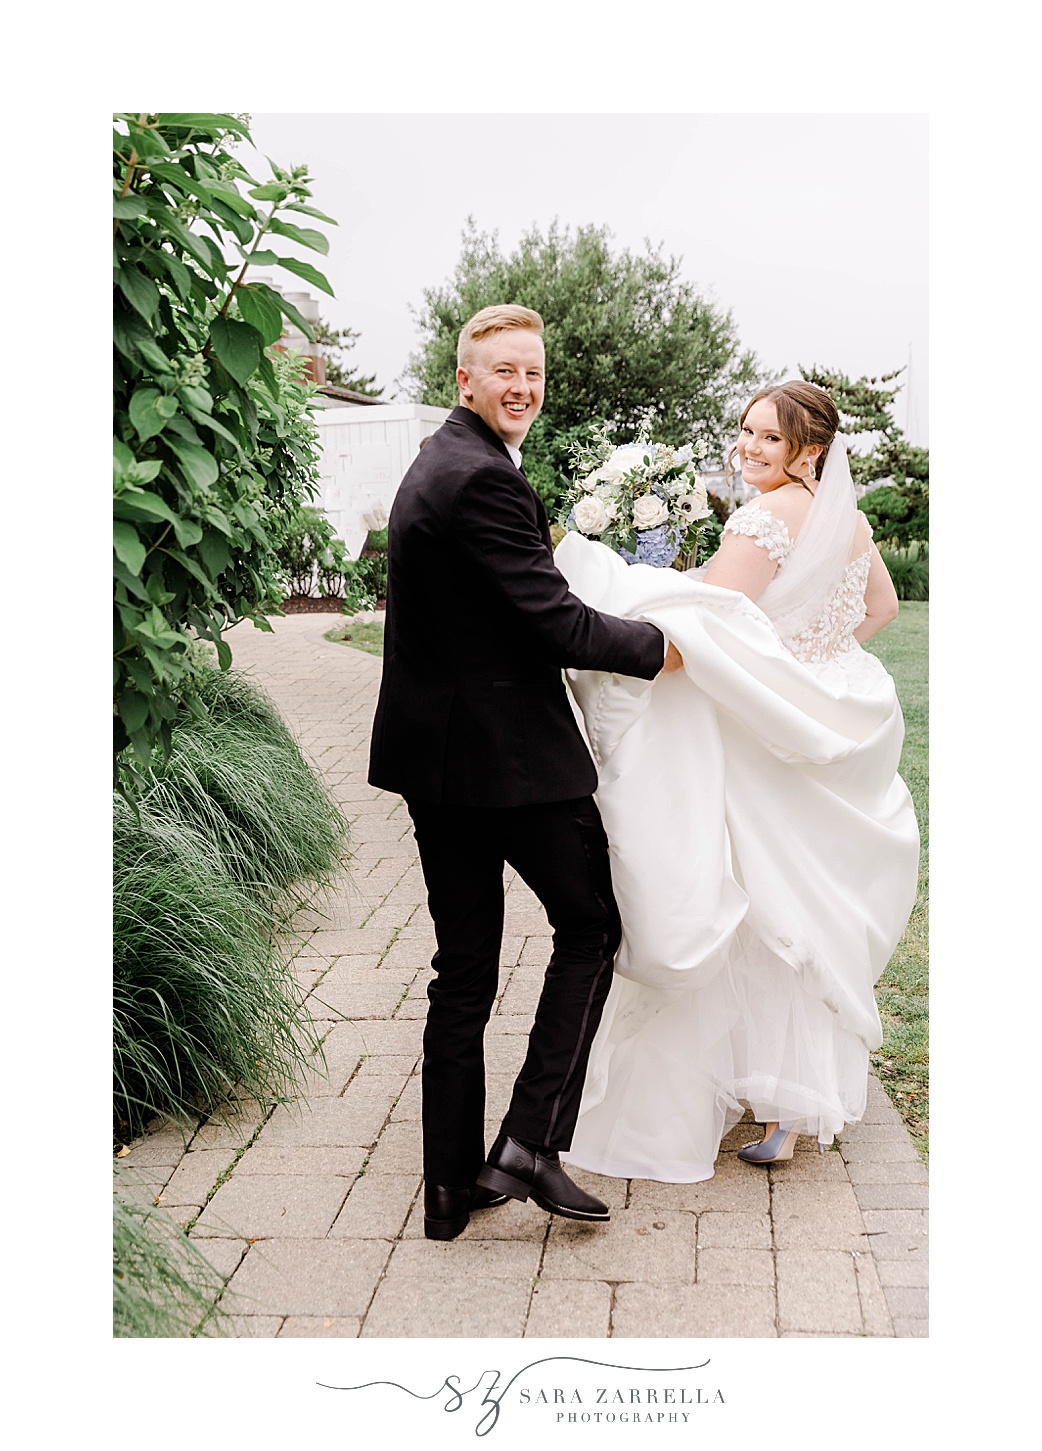 groom helps bride carry wedding dress walking on brick walkway 